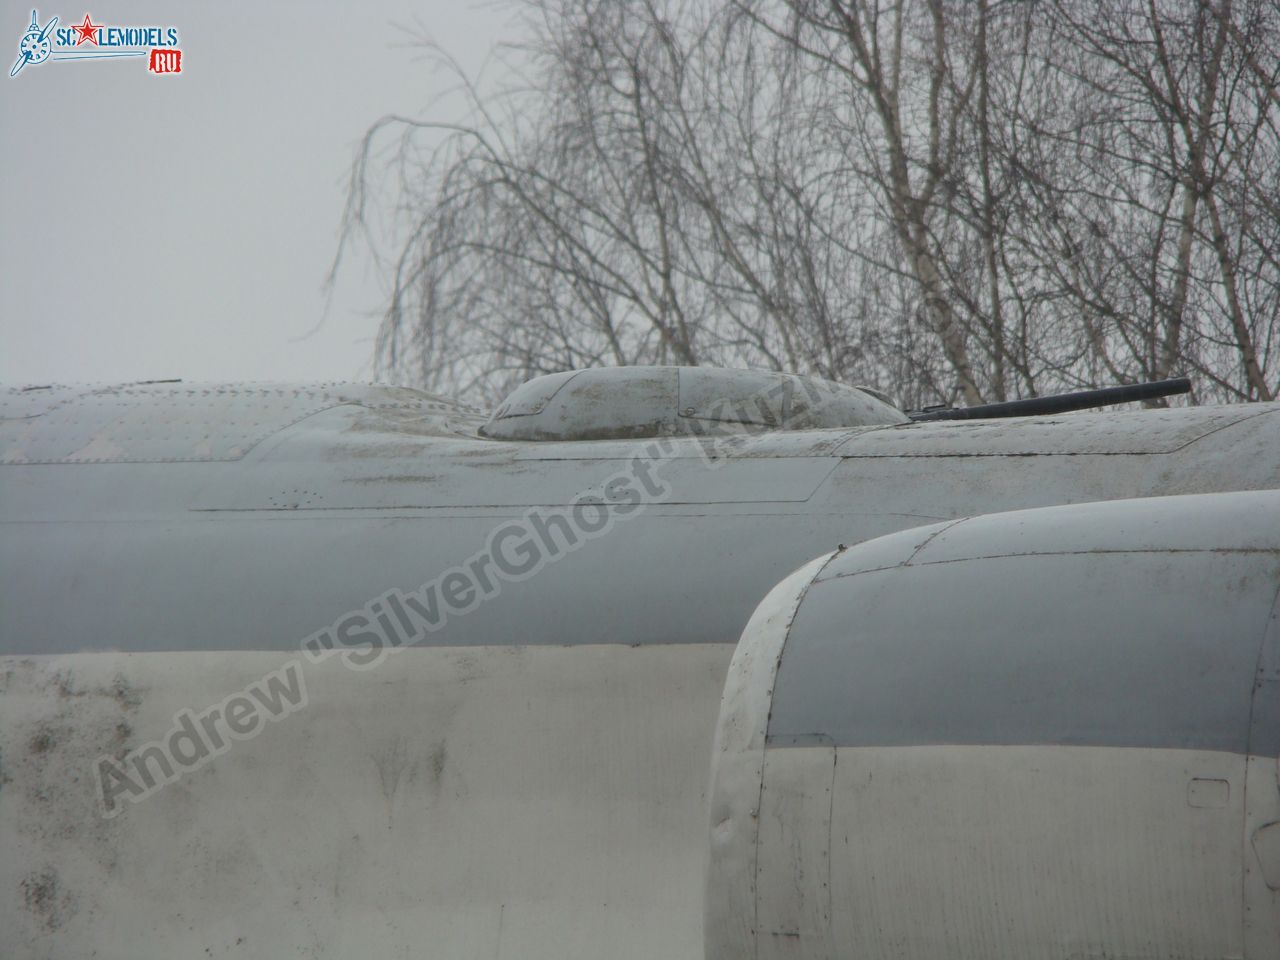 Tu-16_Badger_Smolensk_0045.jpg